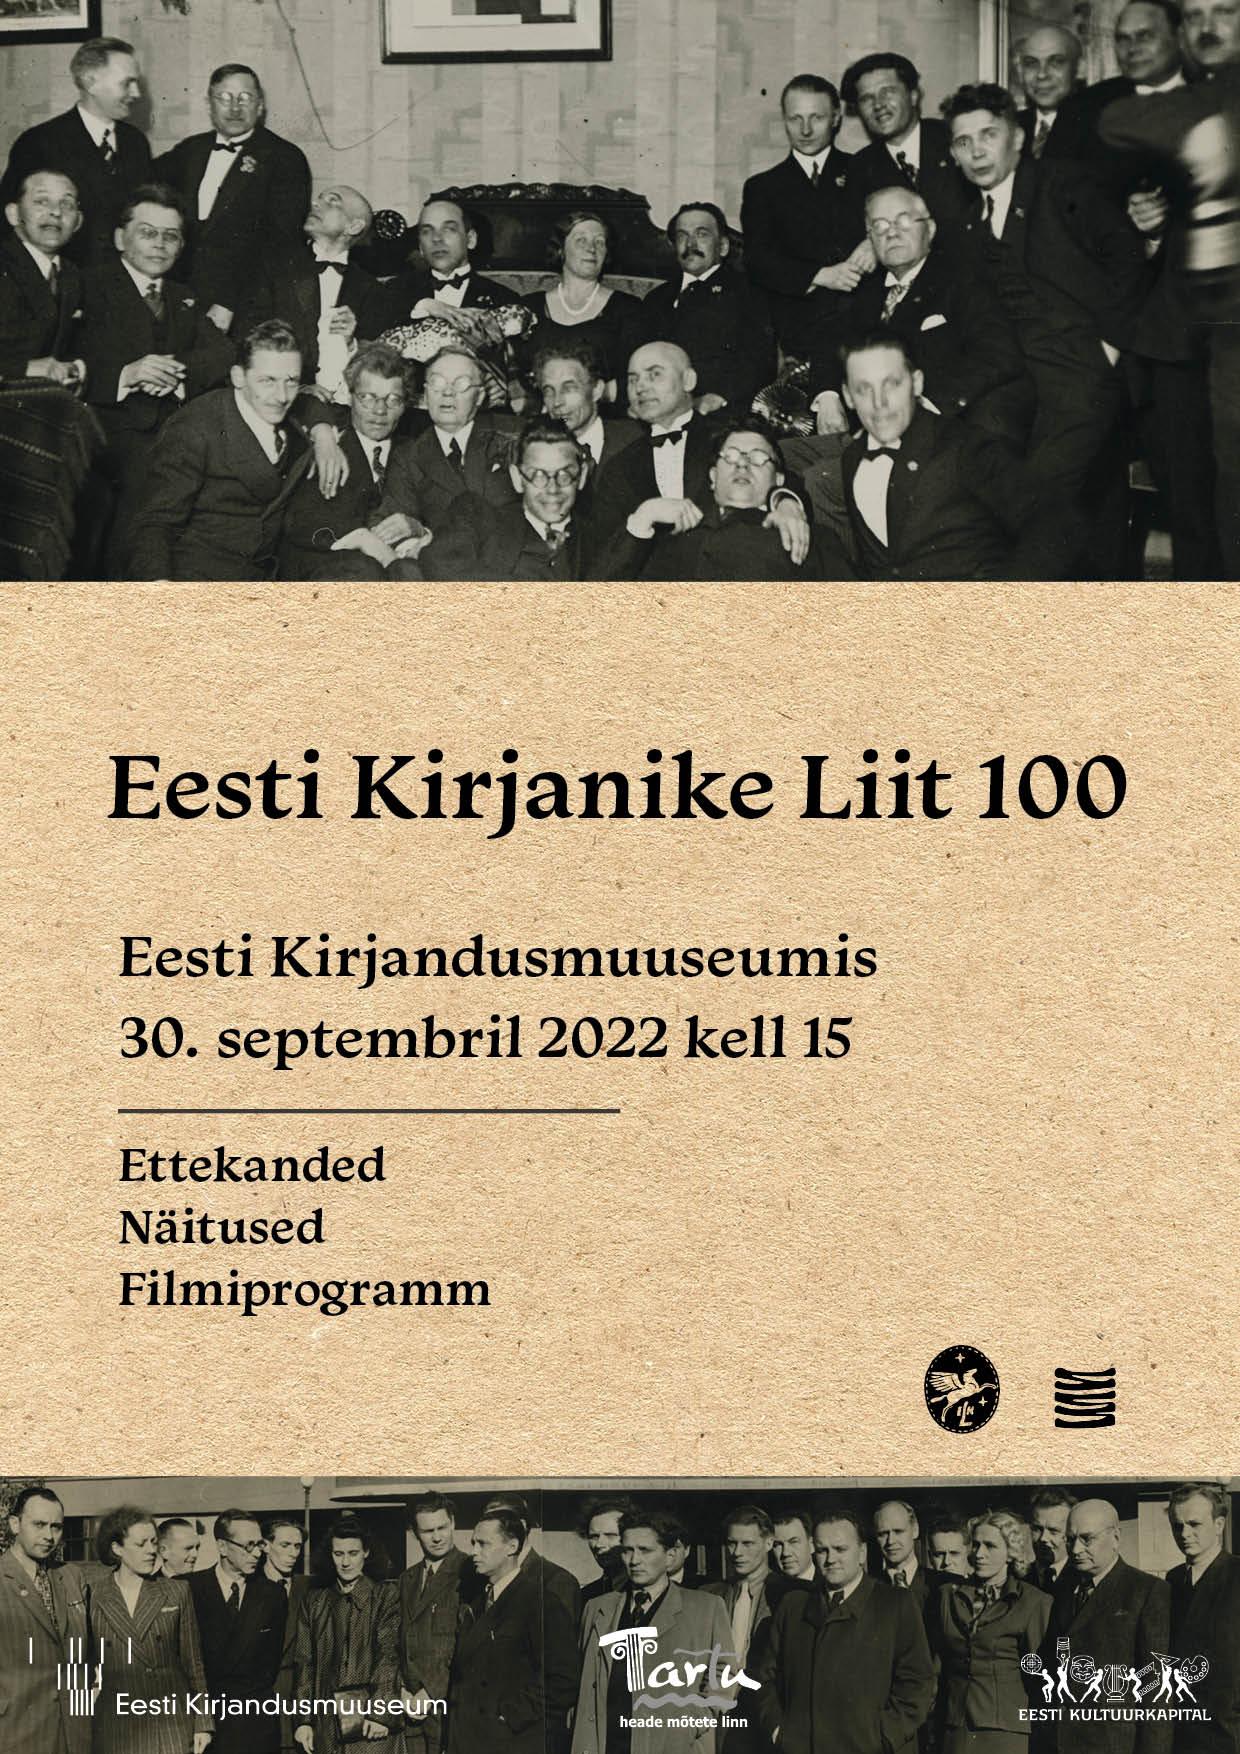 Eesti Kirjanike Liidu liikmed 1930. aastatel: keskel luuletaja Marie Under, tema ümber seisavad ja istuvad rõõmsad pidulikes ülikondades meeskirjanikud.